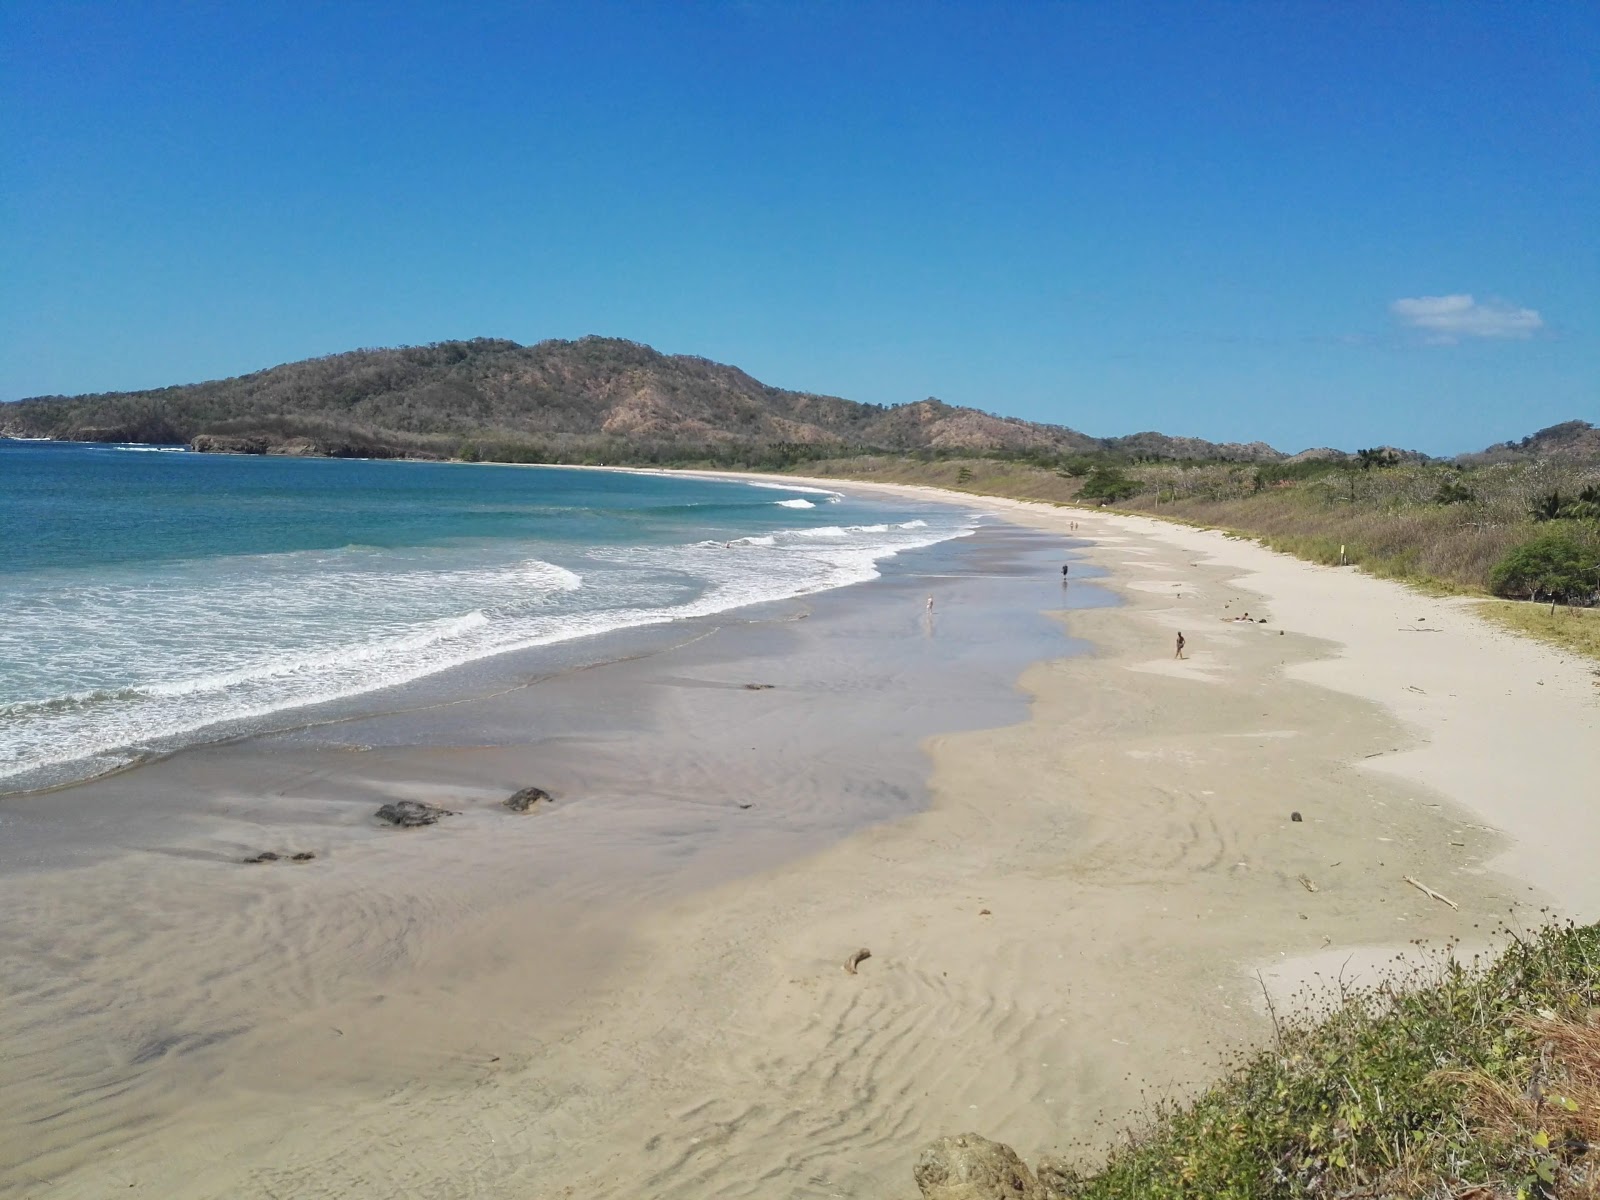 Fotografie cu Playa Ventanas - locul popular printre cunoscătorii de relaxare